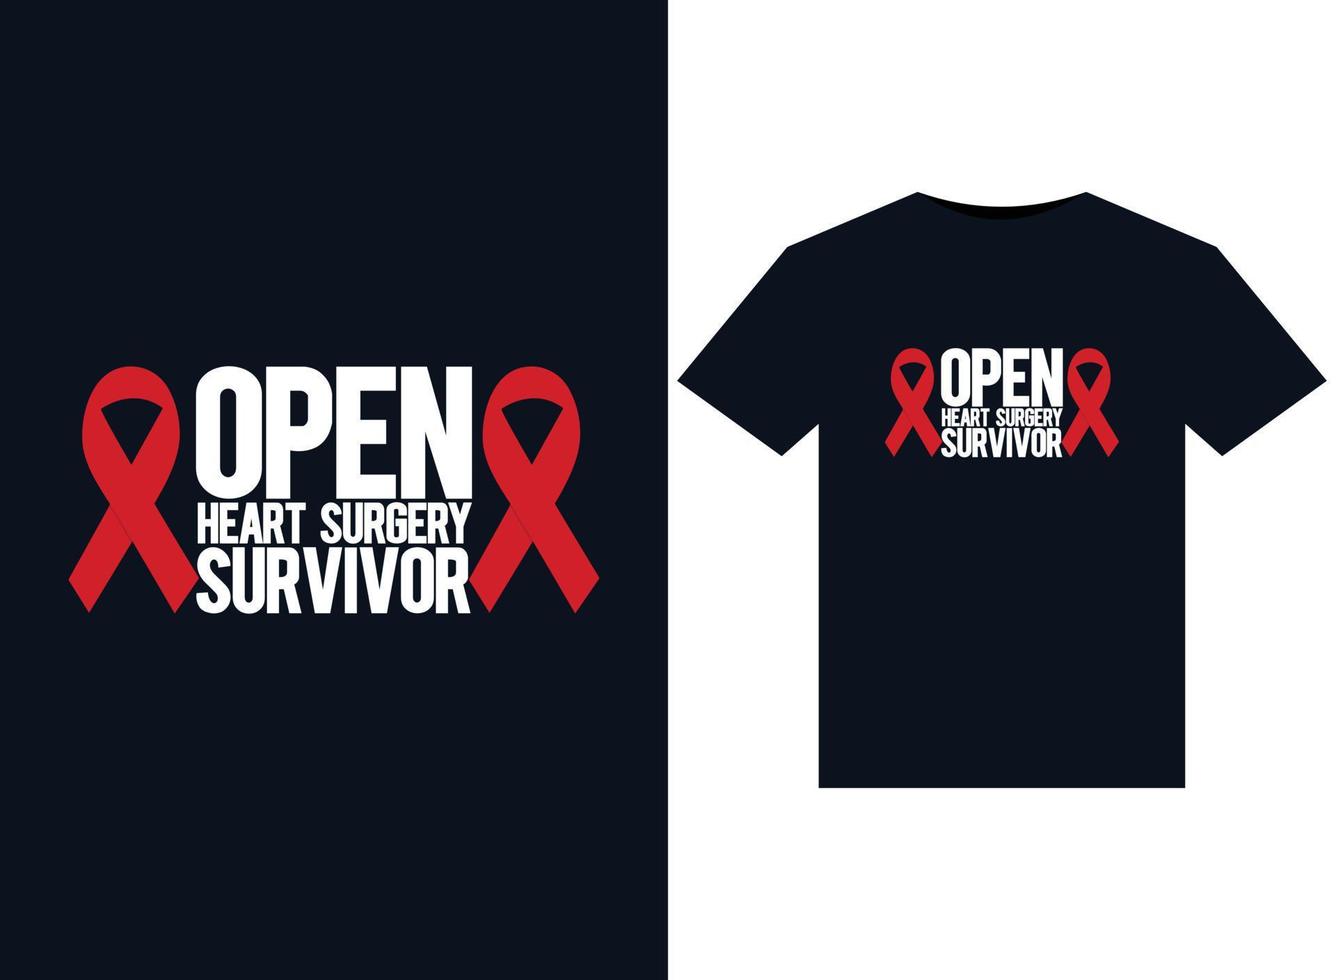 ilustrações de sobreviventes de cirurgia cardíaca aberta para design de camisetas prontas para impressão vetor